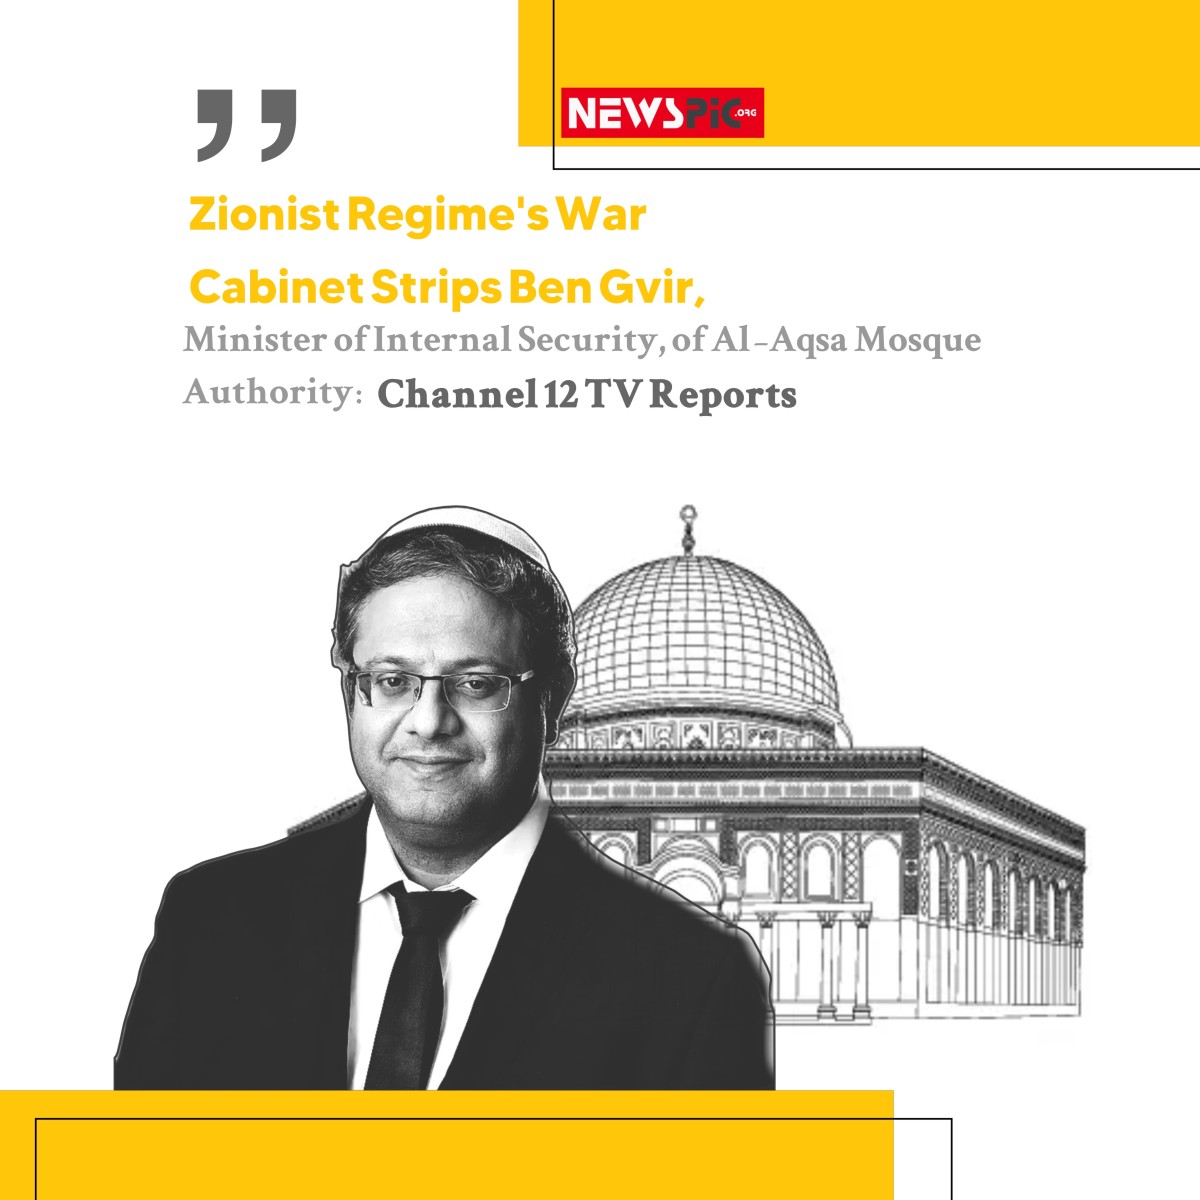 Zionist Regime's War Cabinet Strips Ben Gvi